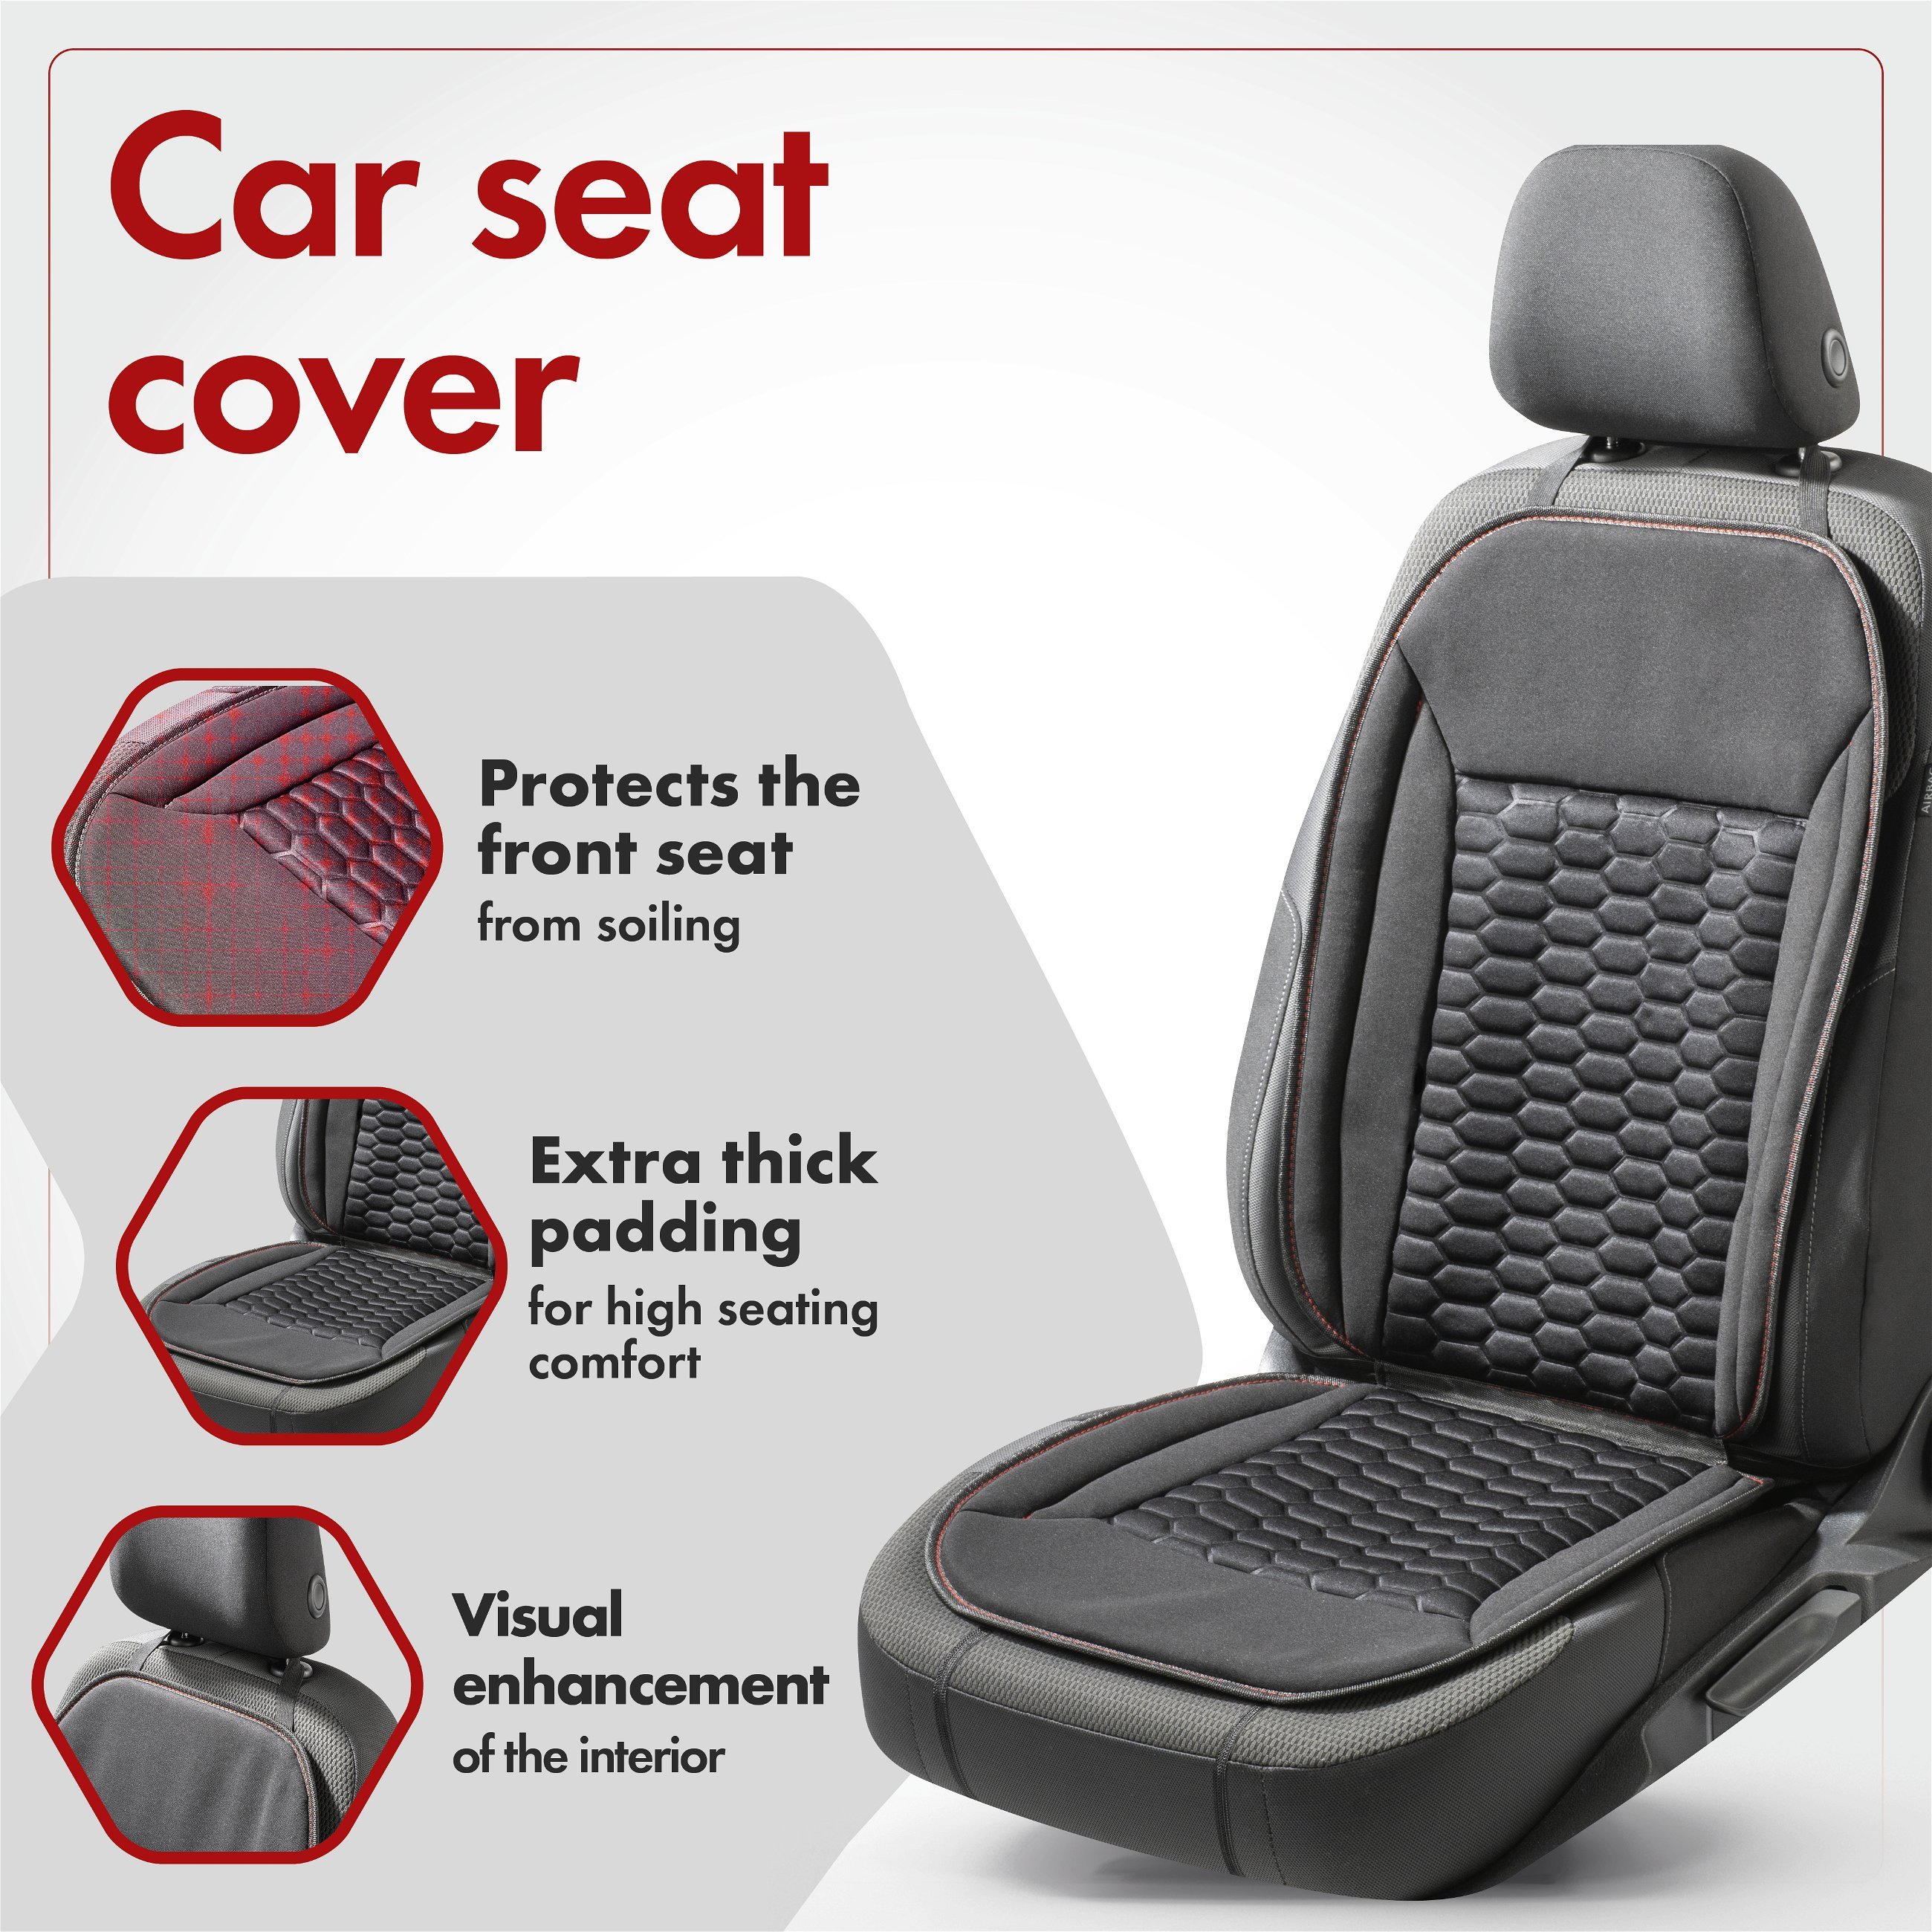 Car Seat cover Valtteri black/red